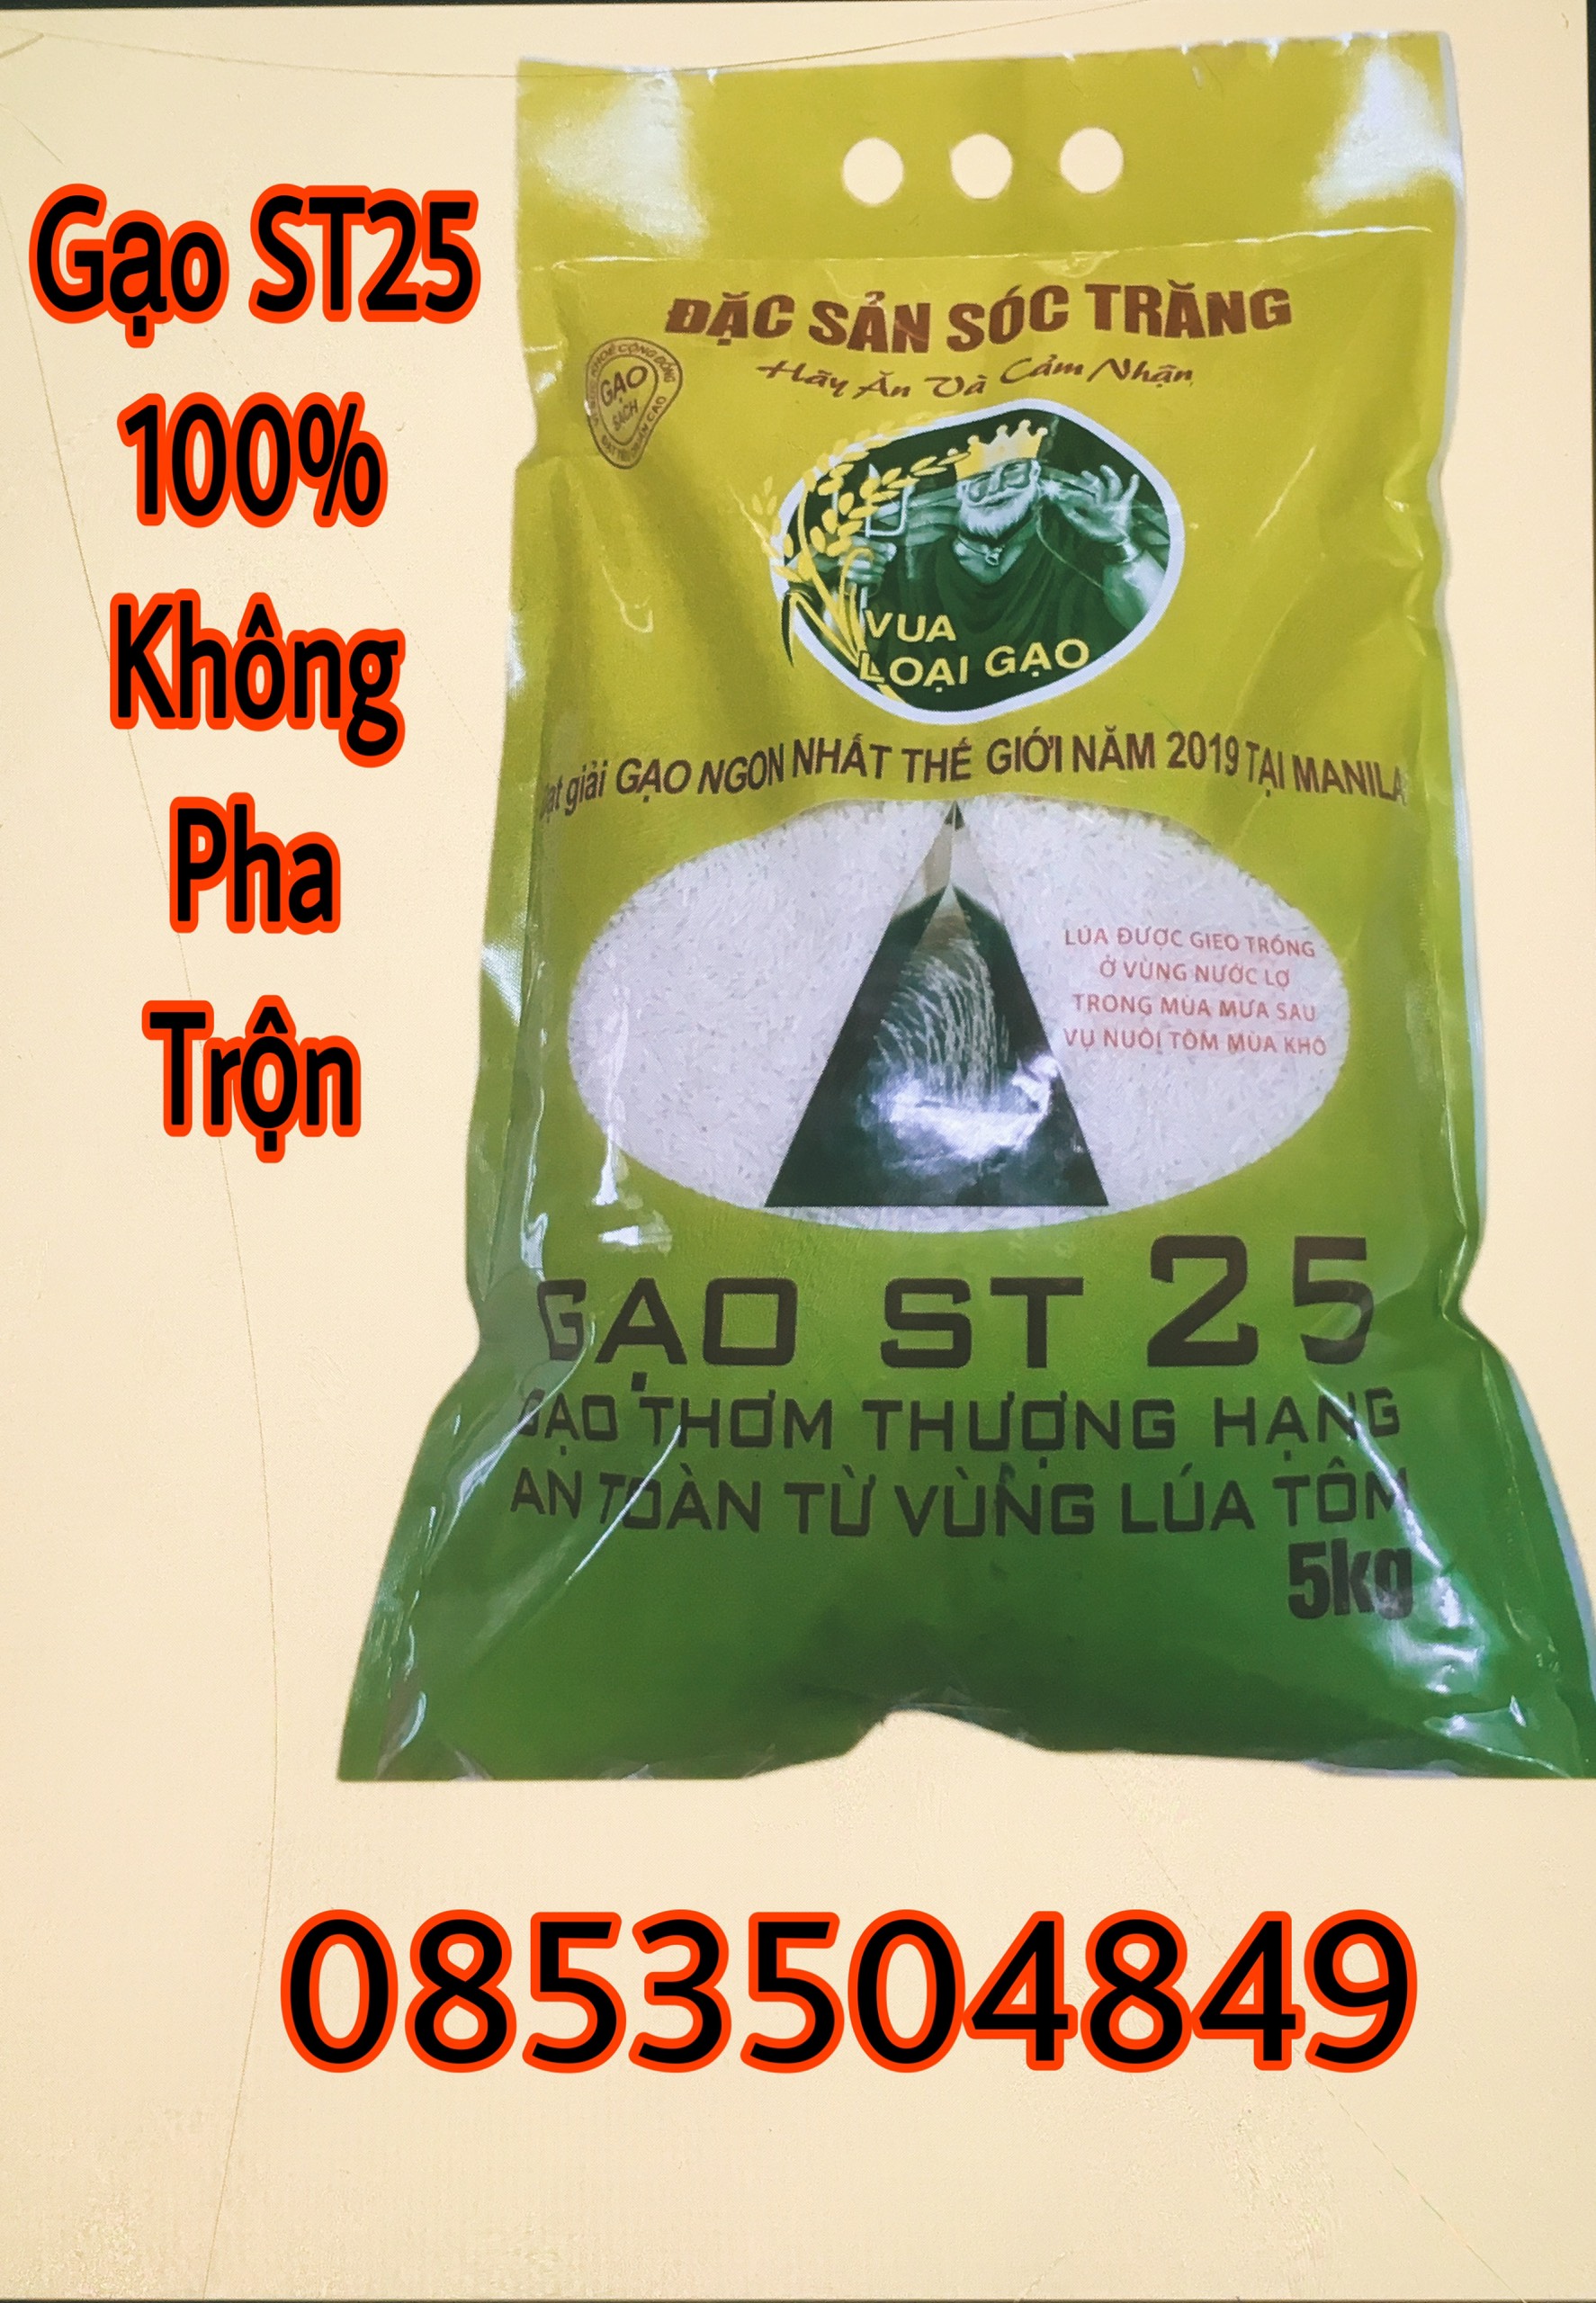 Gạo ST25 - Túi 5kg Thượng Hạng Đặc Sản Sóc Trăng